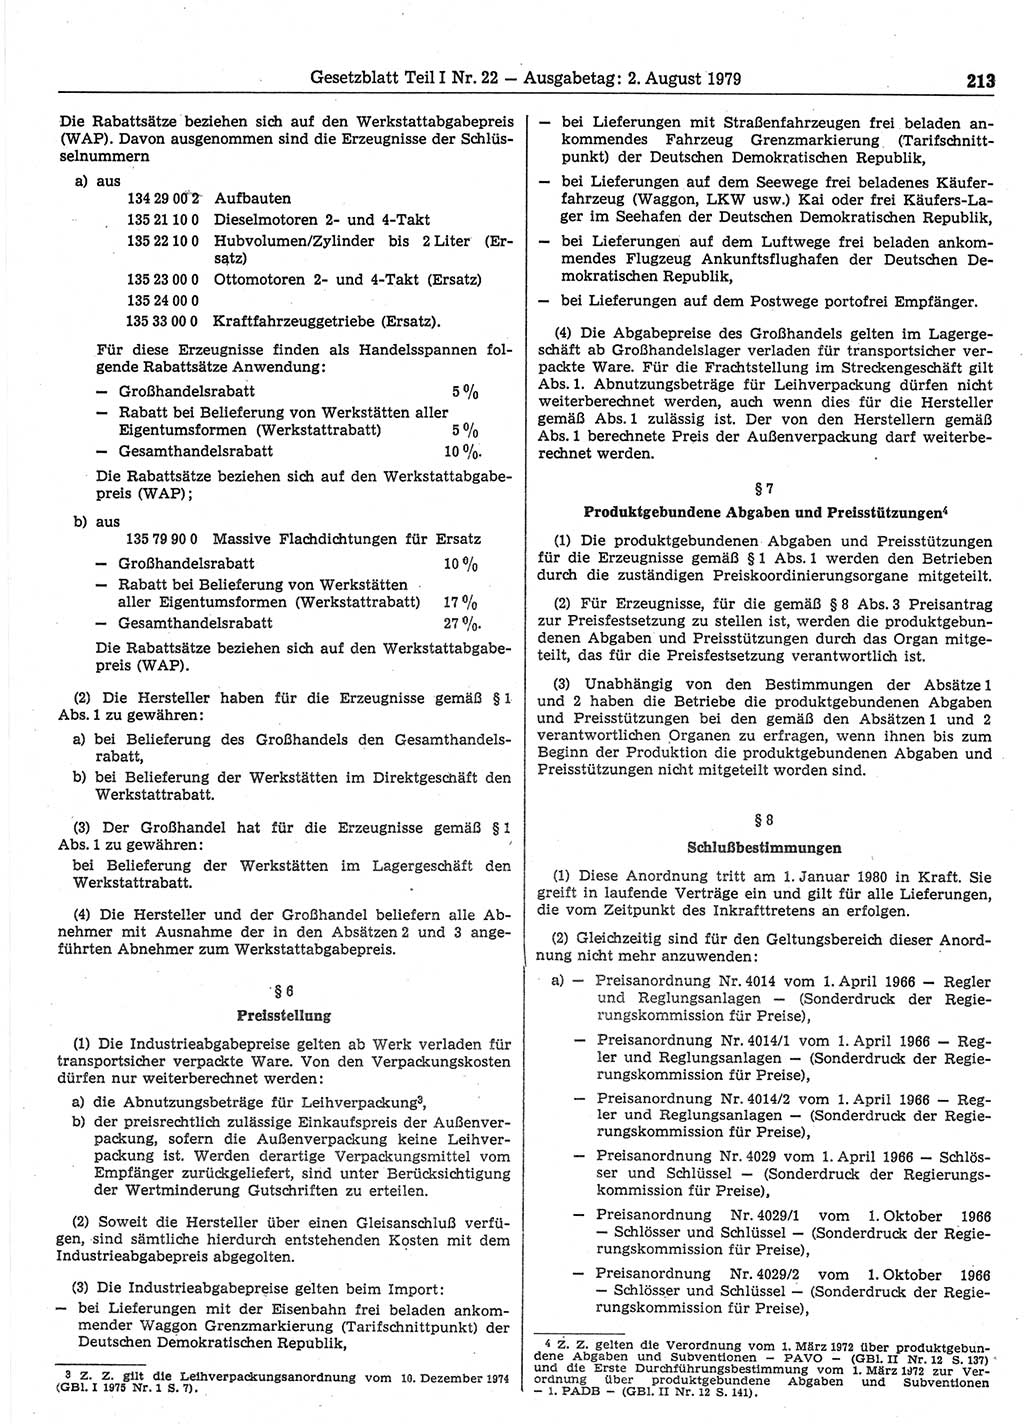 Gesetzblatt (GBl.) der Deutschen Demokratischen Republik (DDR) Teil Ⅰ 1979, Seite 213 (GBl. DDR Ⅰ 1979, S. 213)